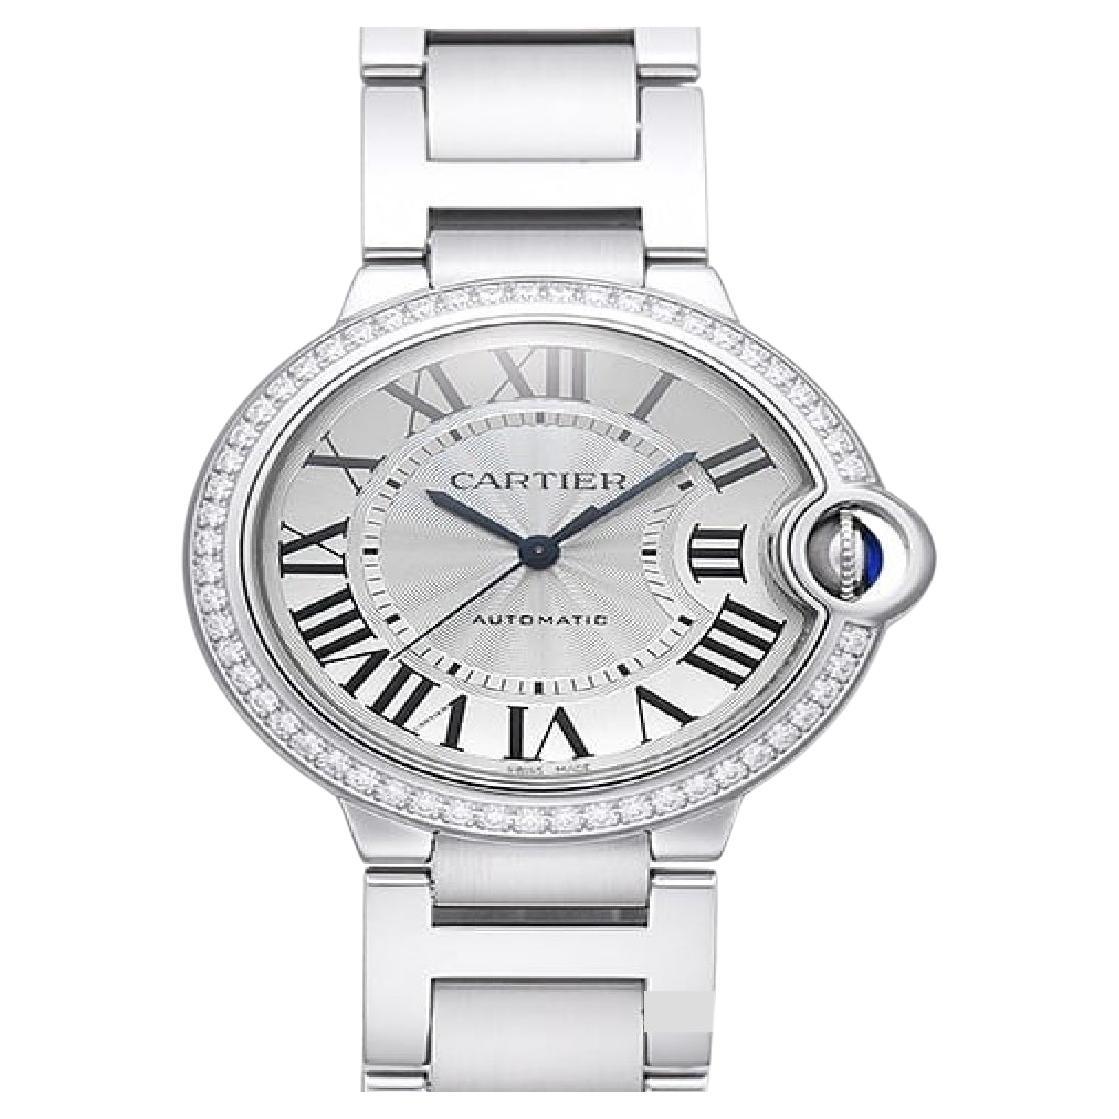 Cartier Ballon Bleu 36mm W4BB0024 - Elegant Stainless Steel Women's Watch